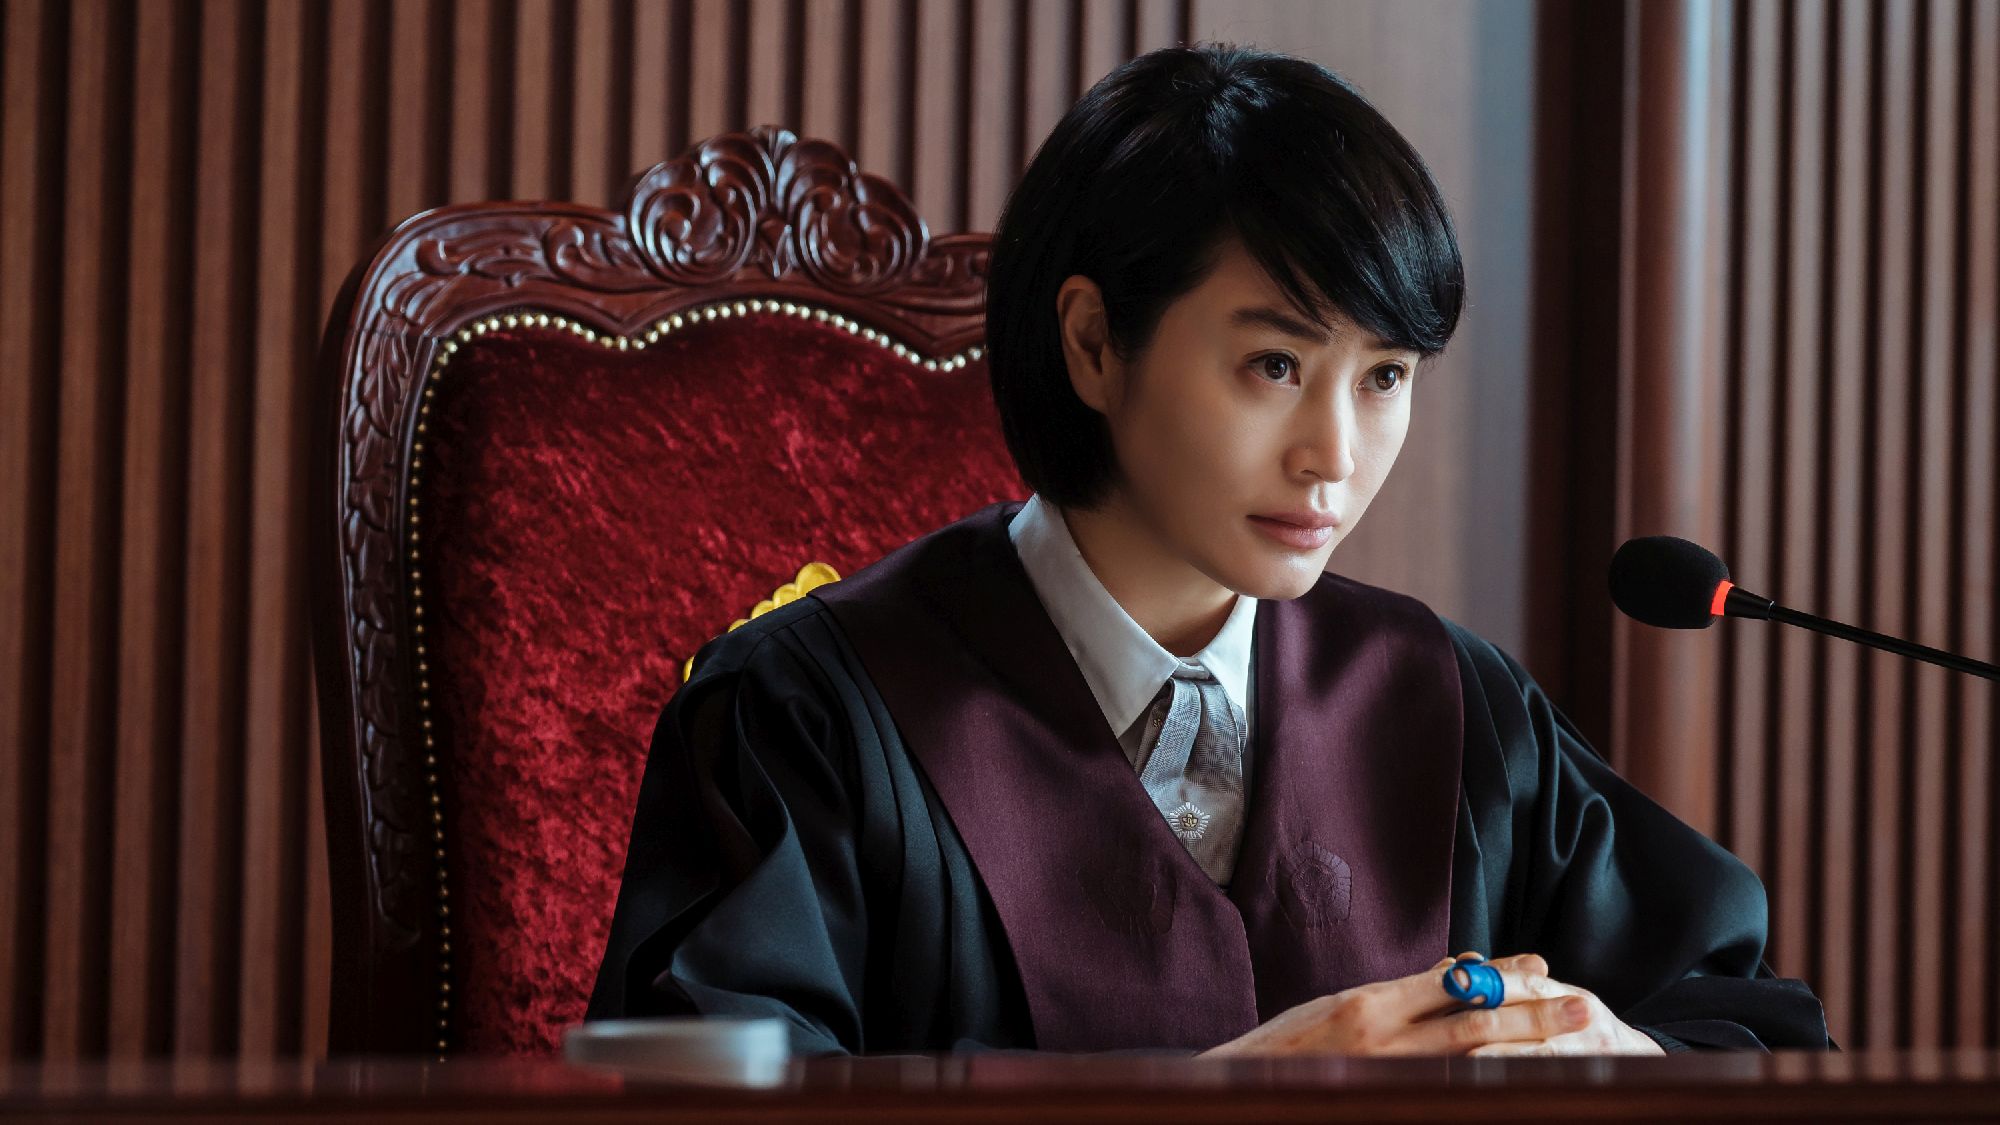 “Tribunal de menores”: un drama legal coreano que analiza el trasfondo de la delincuencia juvenil